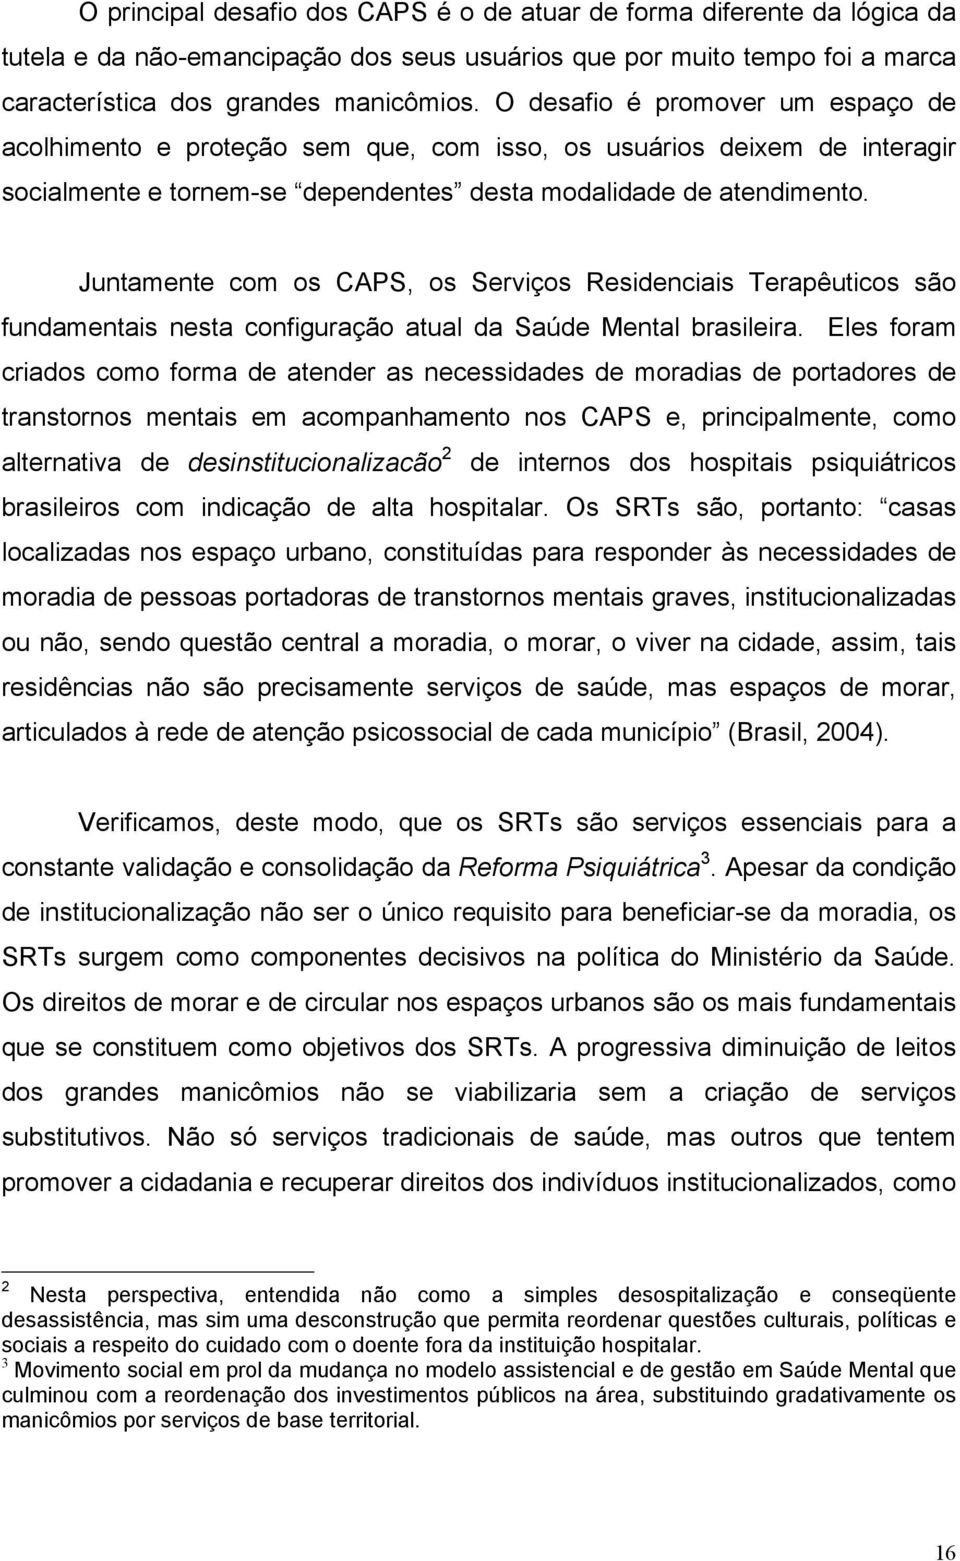 Juntamente com os CAPS, os Serviços Residenciais Terapêuticos são fundamentais nesta configuração atual da Saúde Mental brasileira.